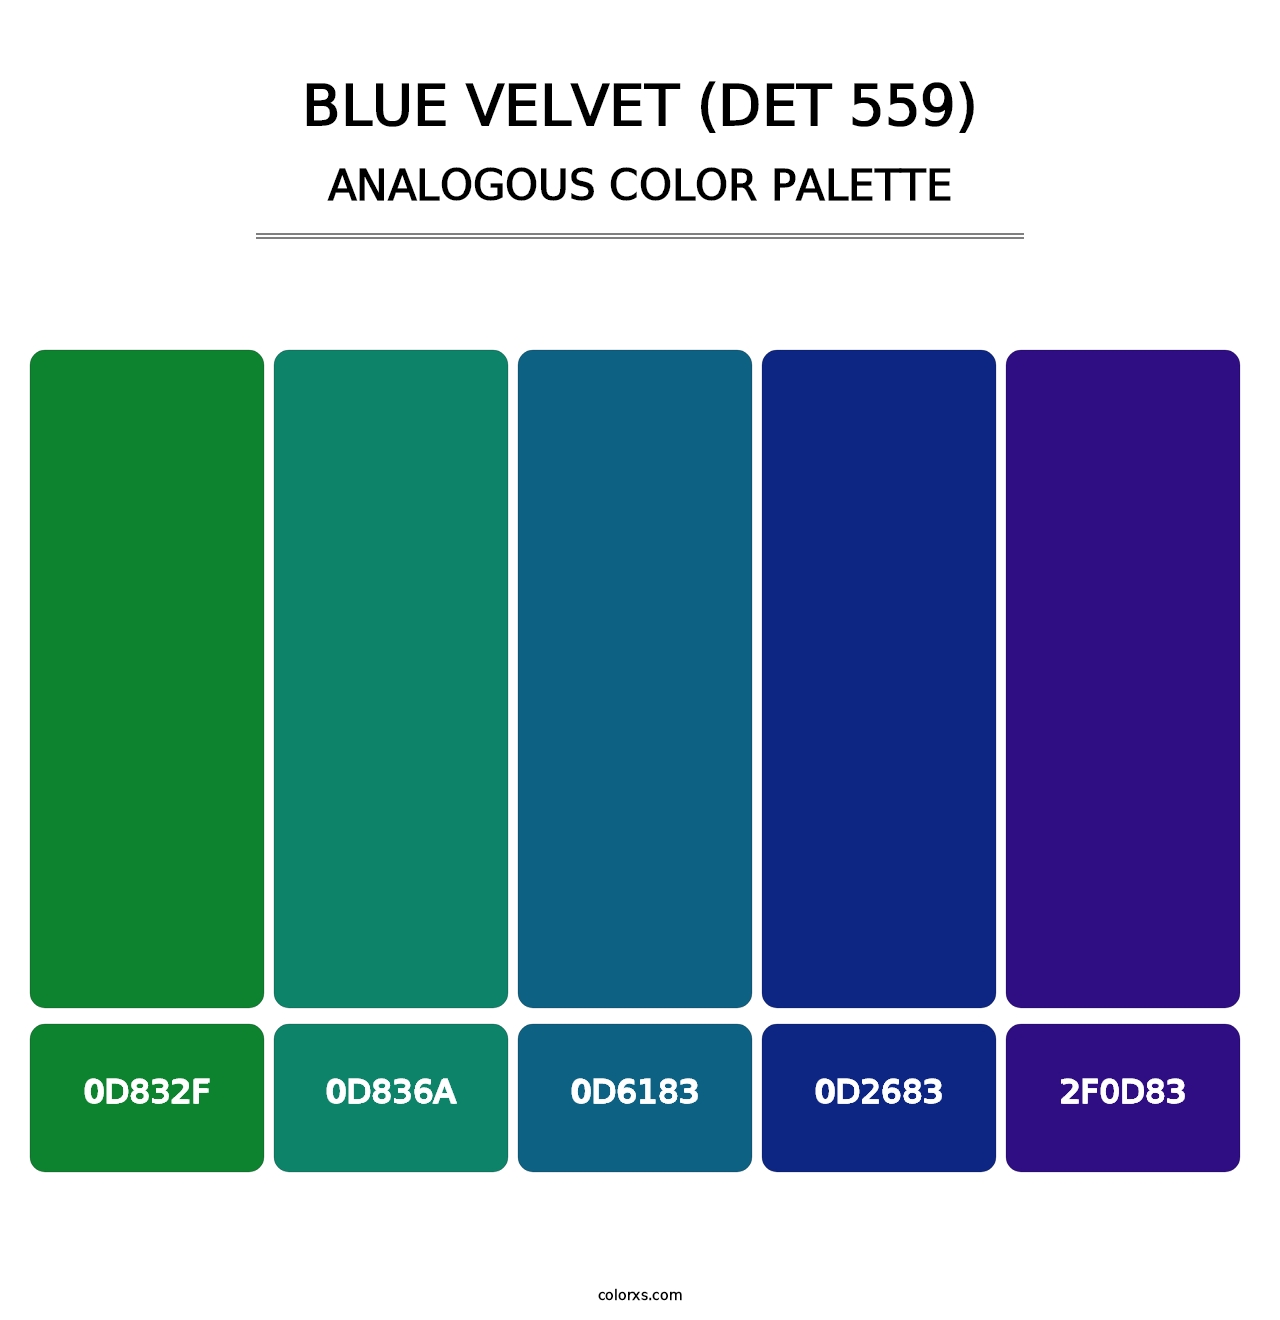 Blue Velvet (DET 559) - Analogous Color Palette